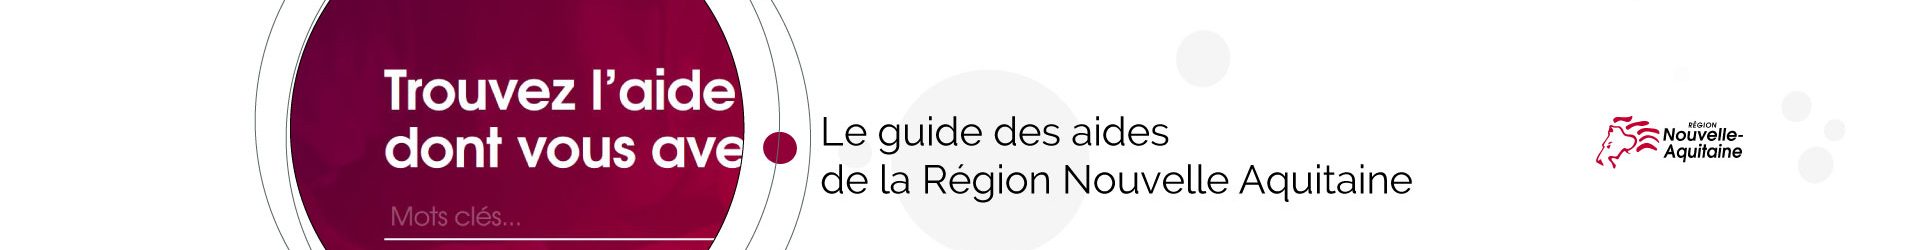 Le guide des aides de la Region Nouvelle Aquitaine